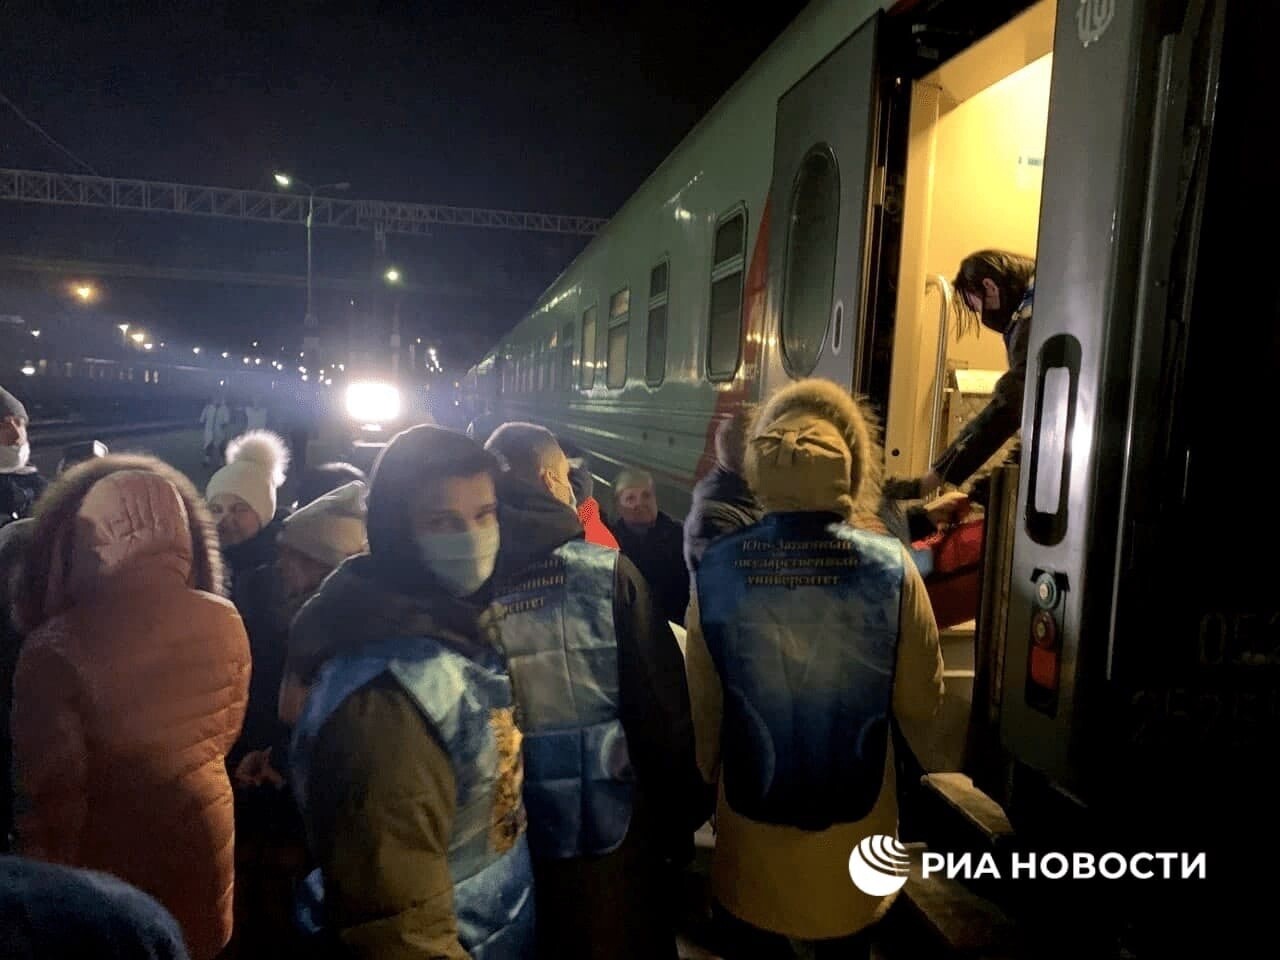 Дмитрий Морев заявил, что Архангельск примет столько беженцев из ЛНР и ДНР, сколько сможет